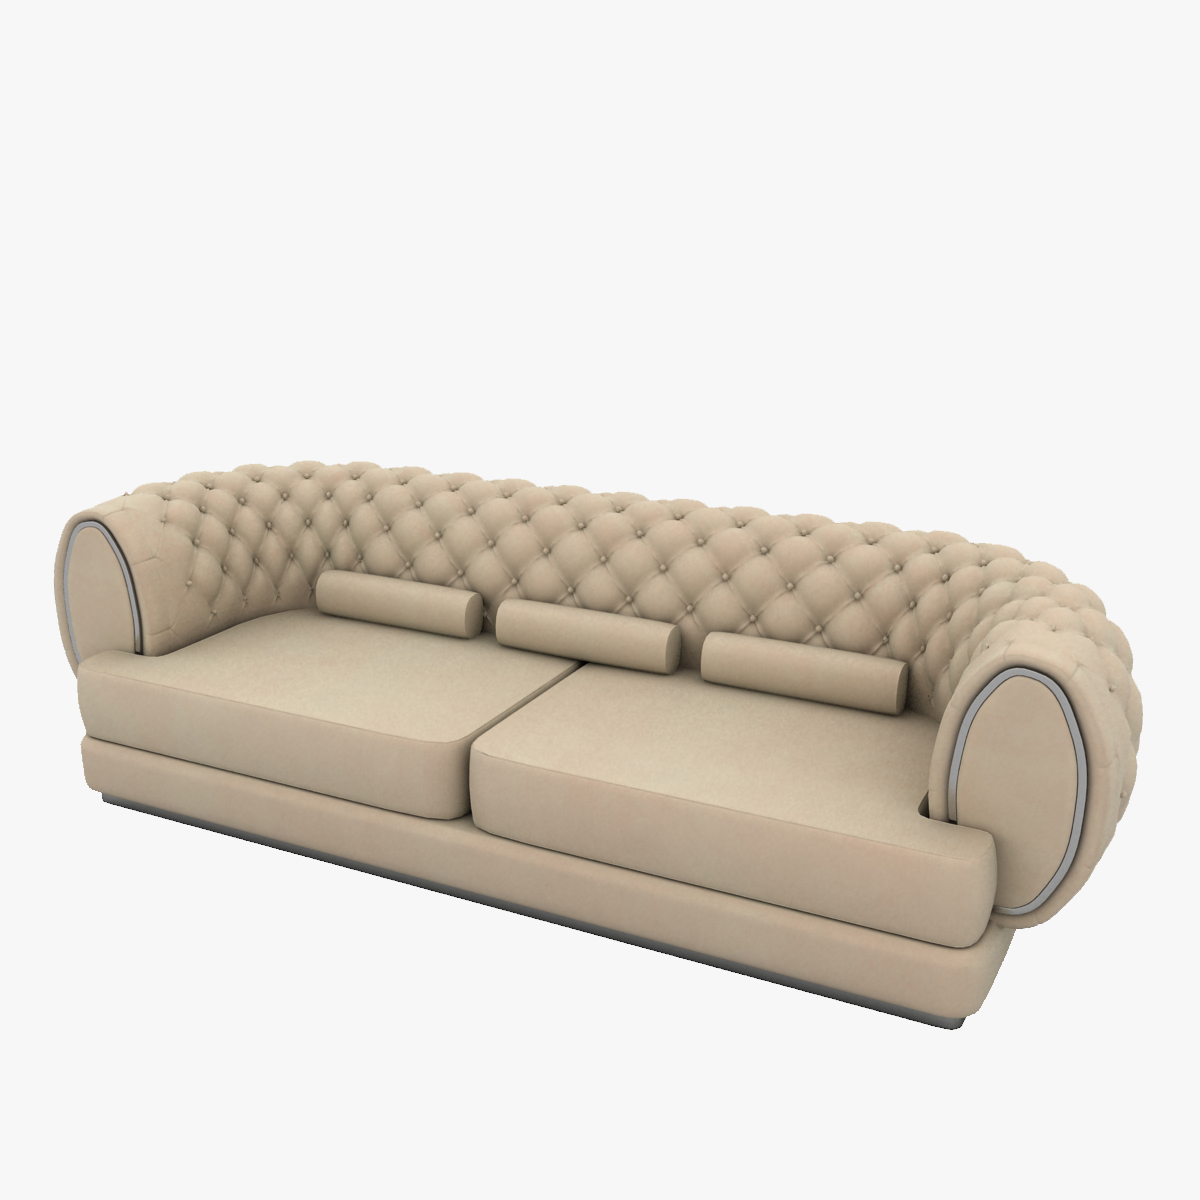 Luxury Sofa 3d Model 293911 